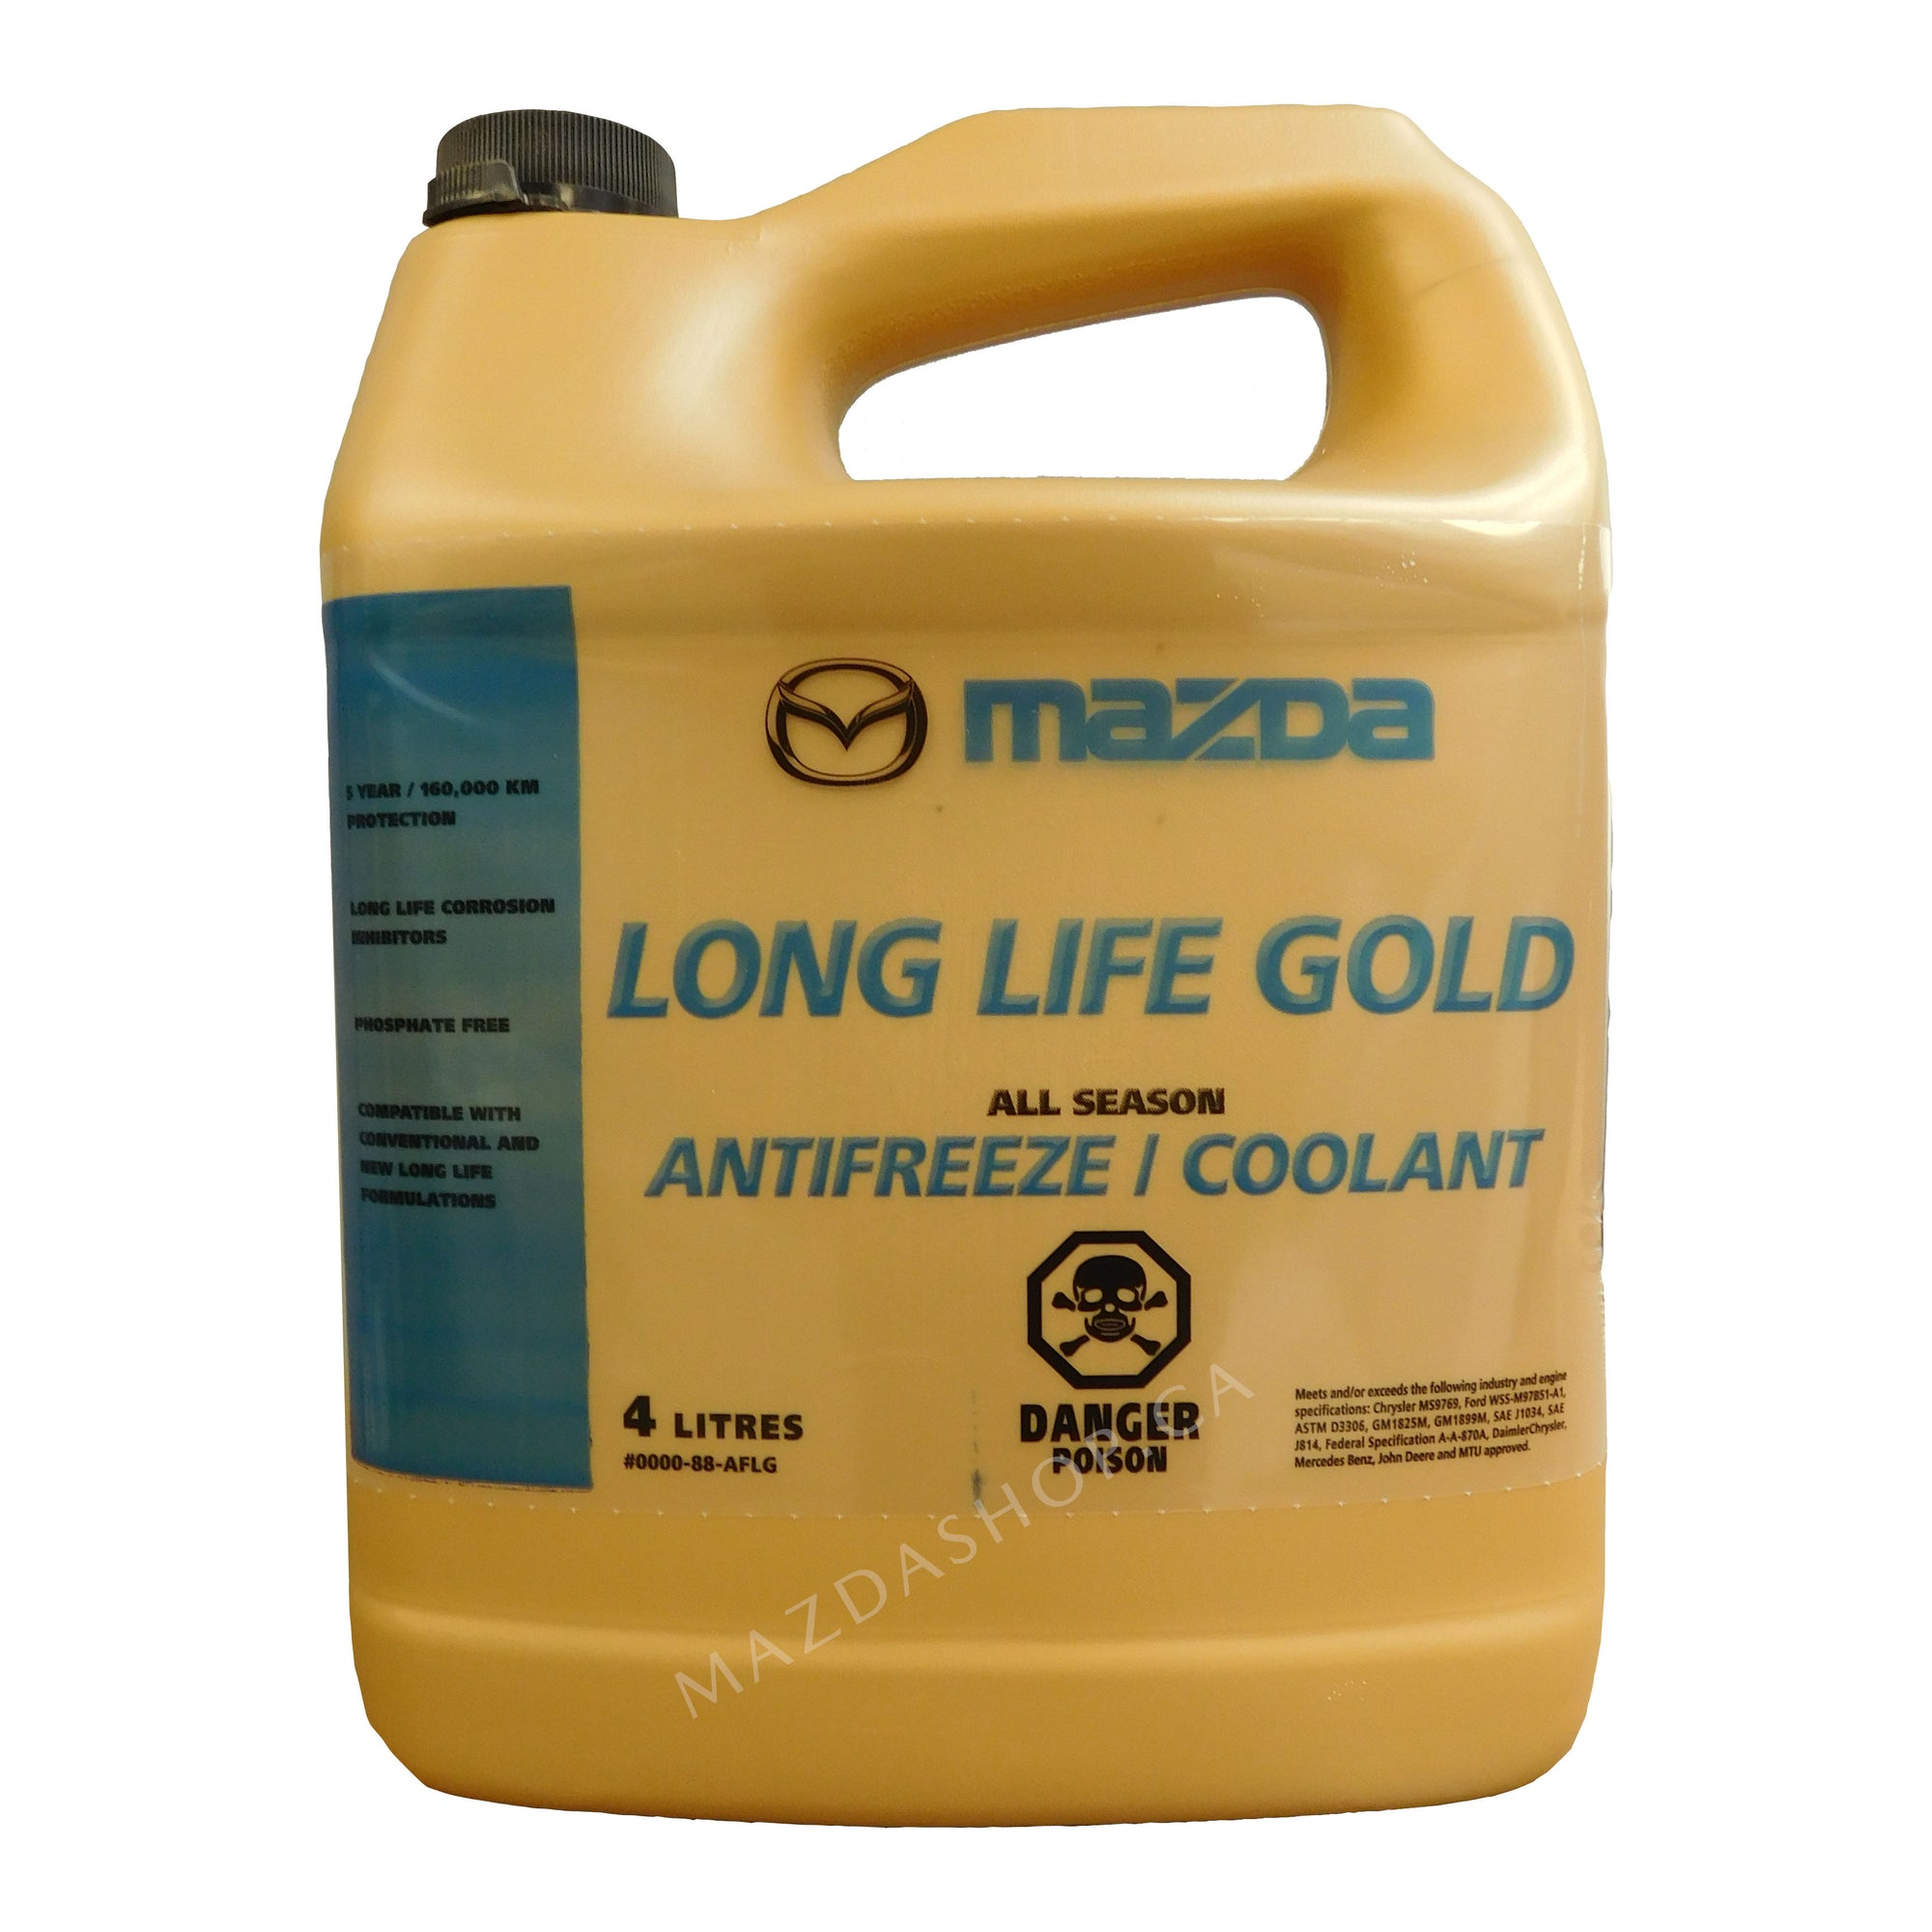 Mazda Long Life Gold Antifreeze/Coolant